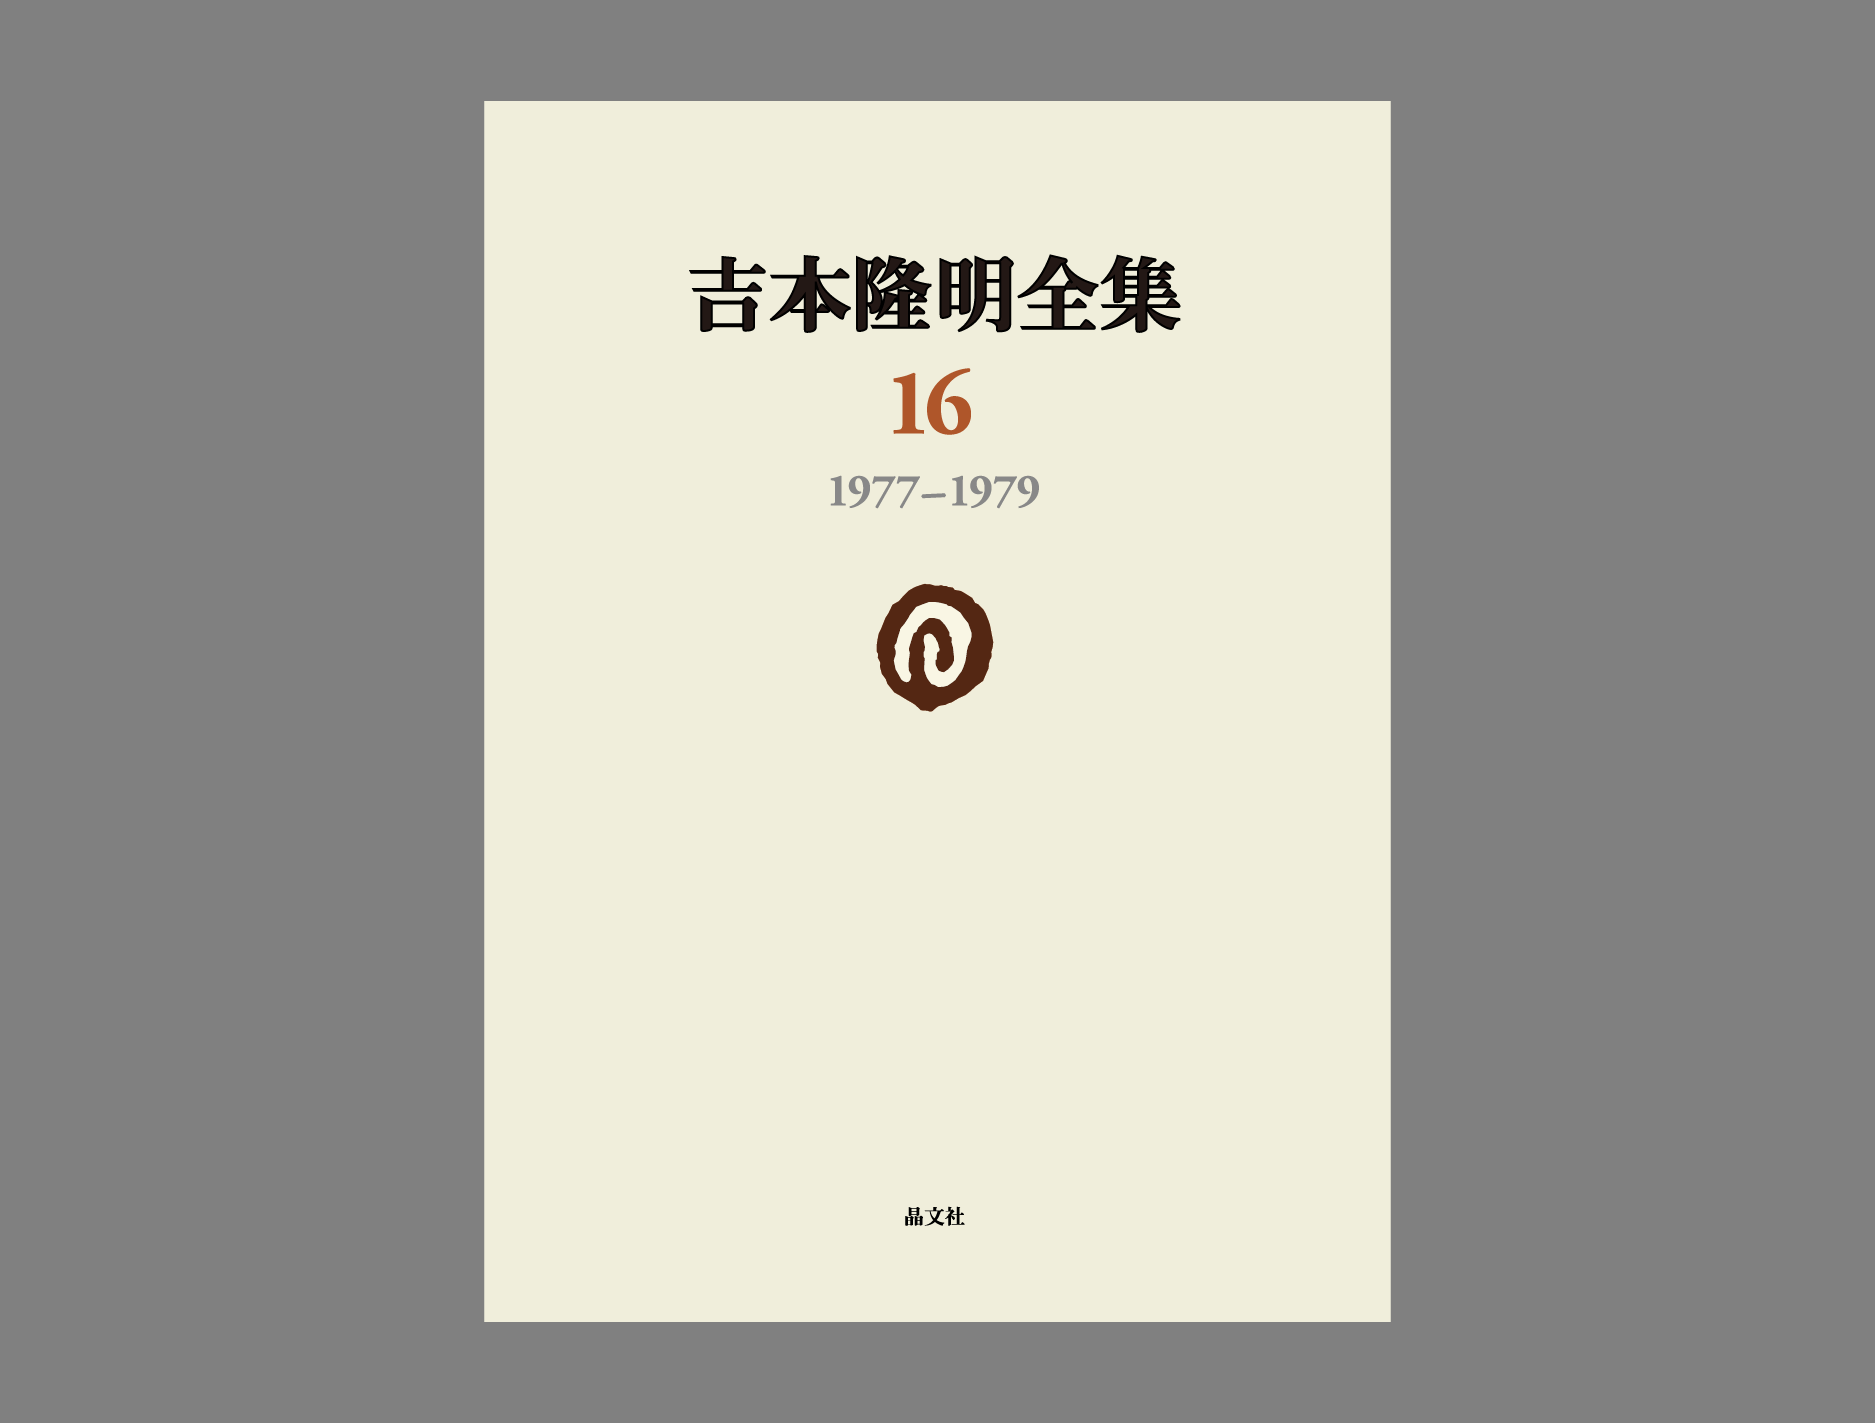 吉本隆明全集第16巻（1977-1979）詳細情報